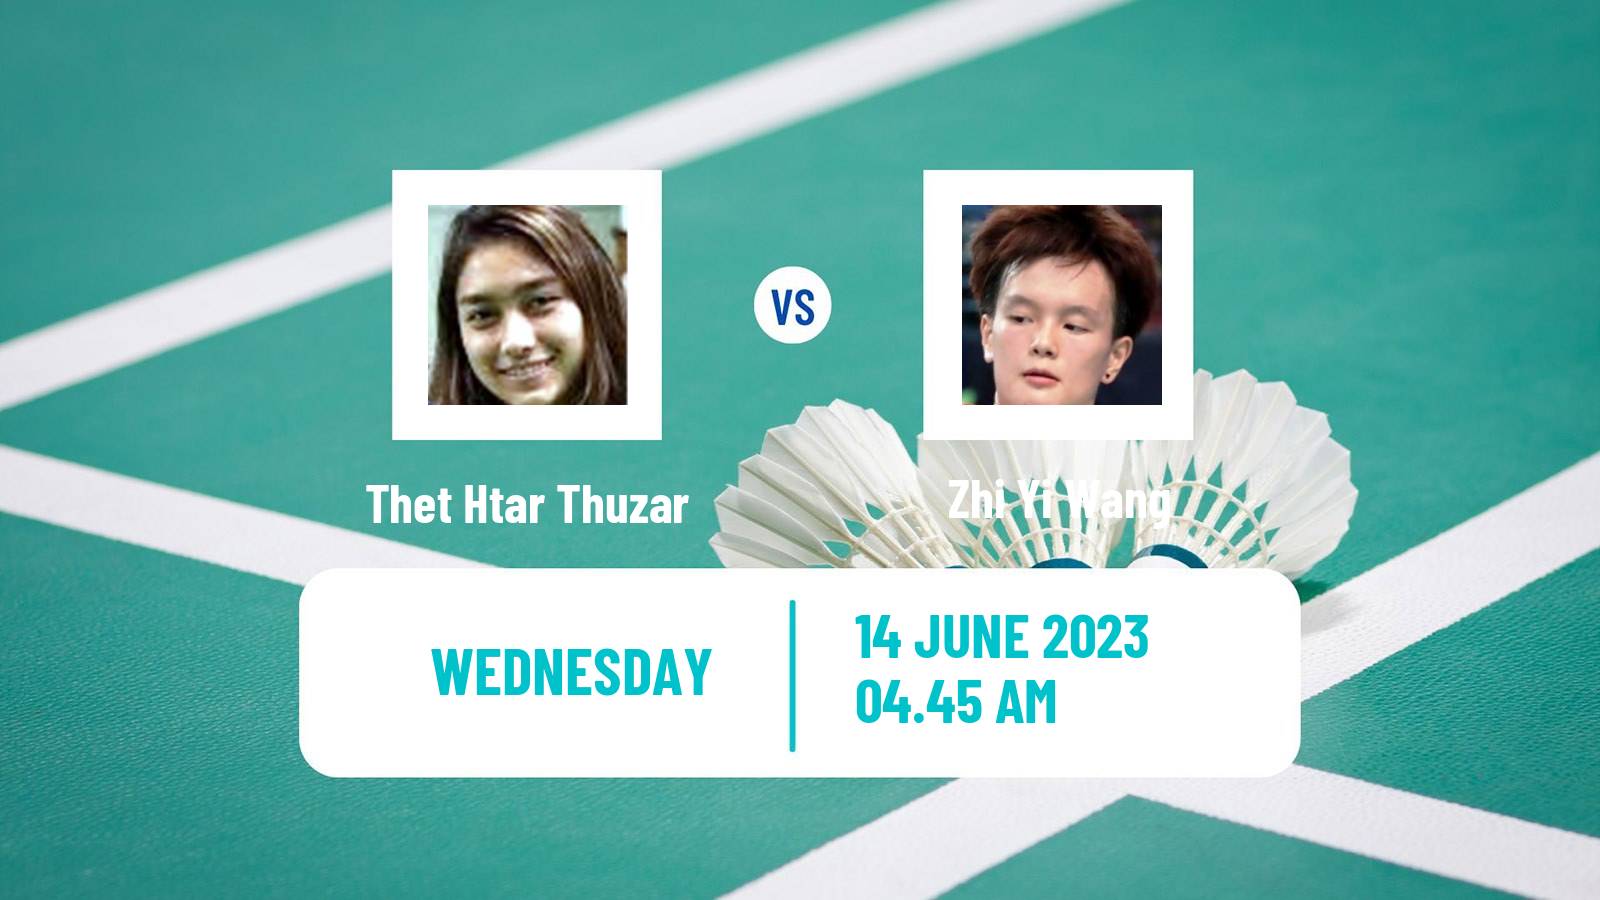 Badminton BWF World Tour Indonesia Open Women Thet Htar Thuzar - Zhi Yi Wang